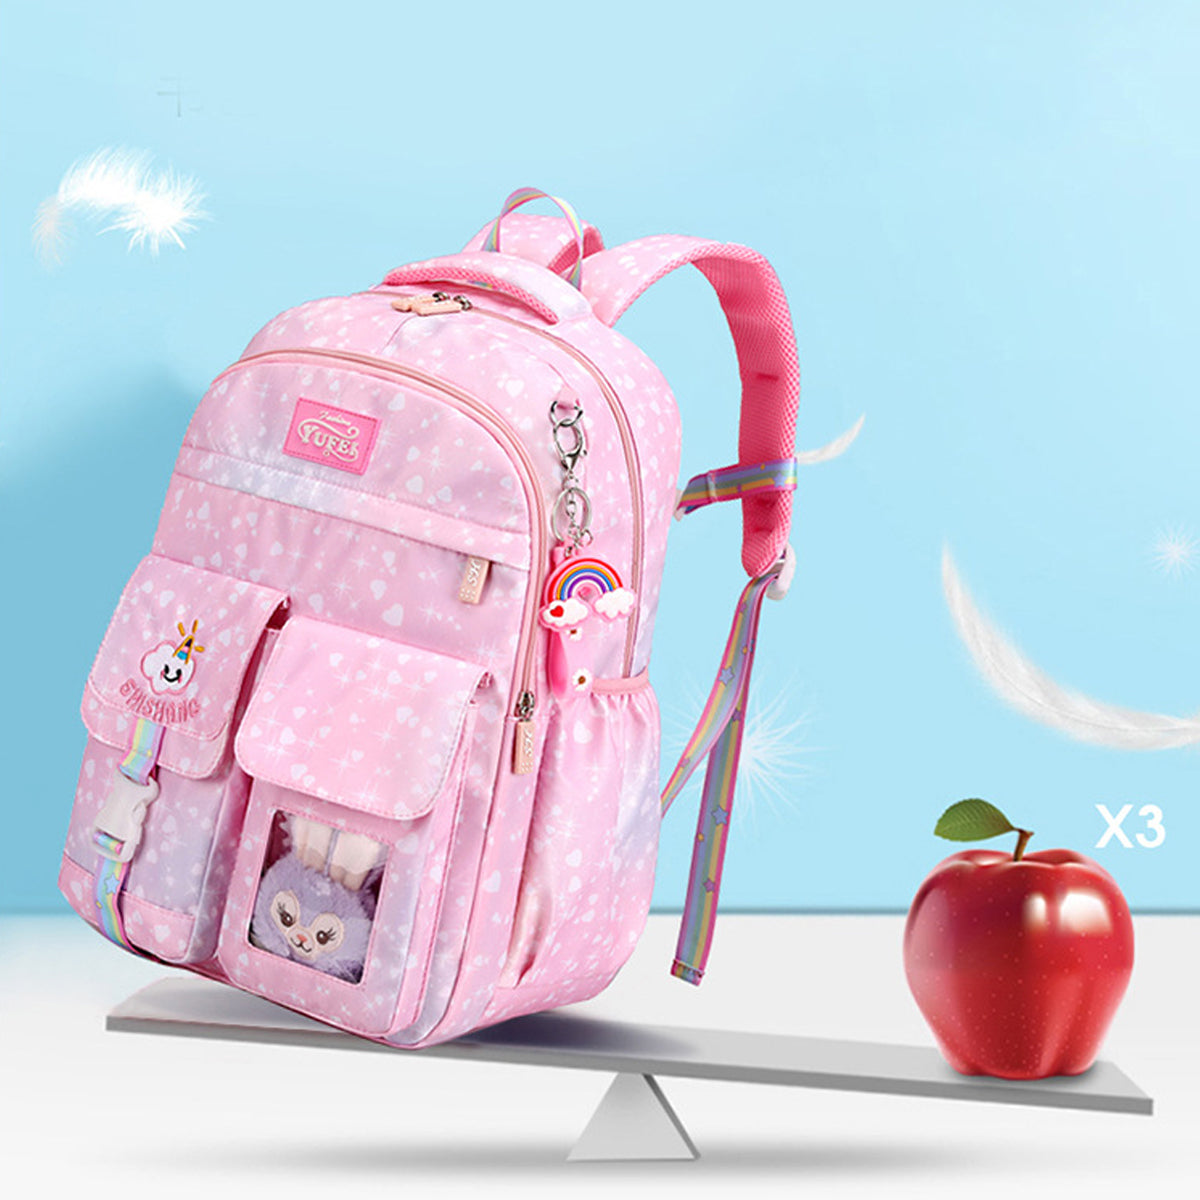 Cute Princess Lightweight Stress Relief Backpack